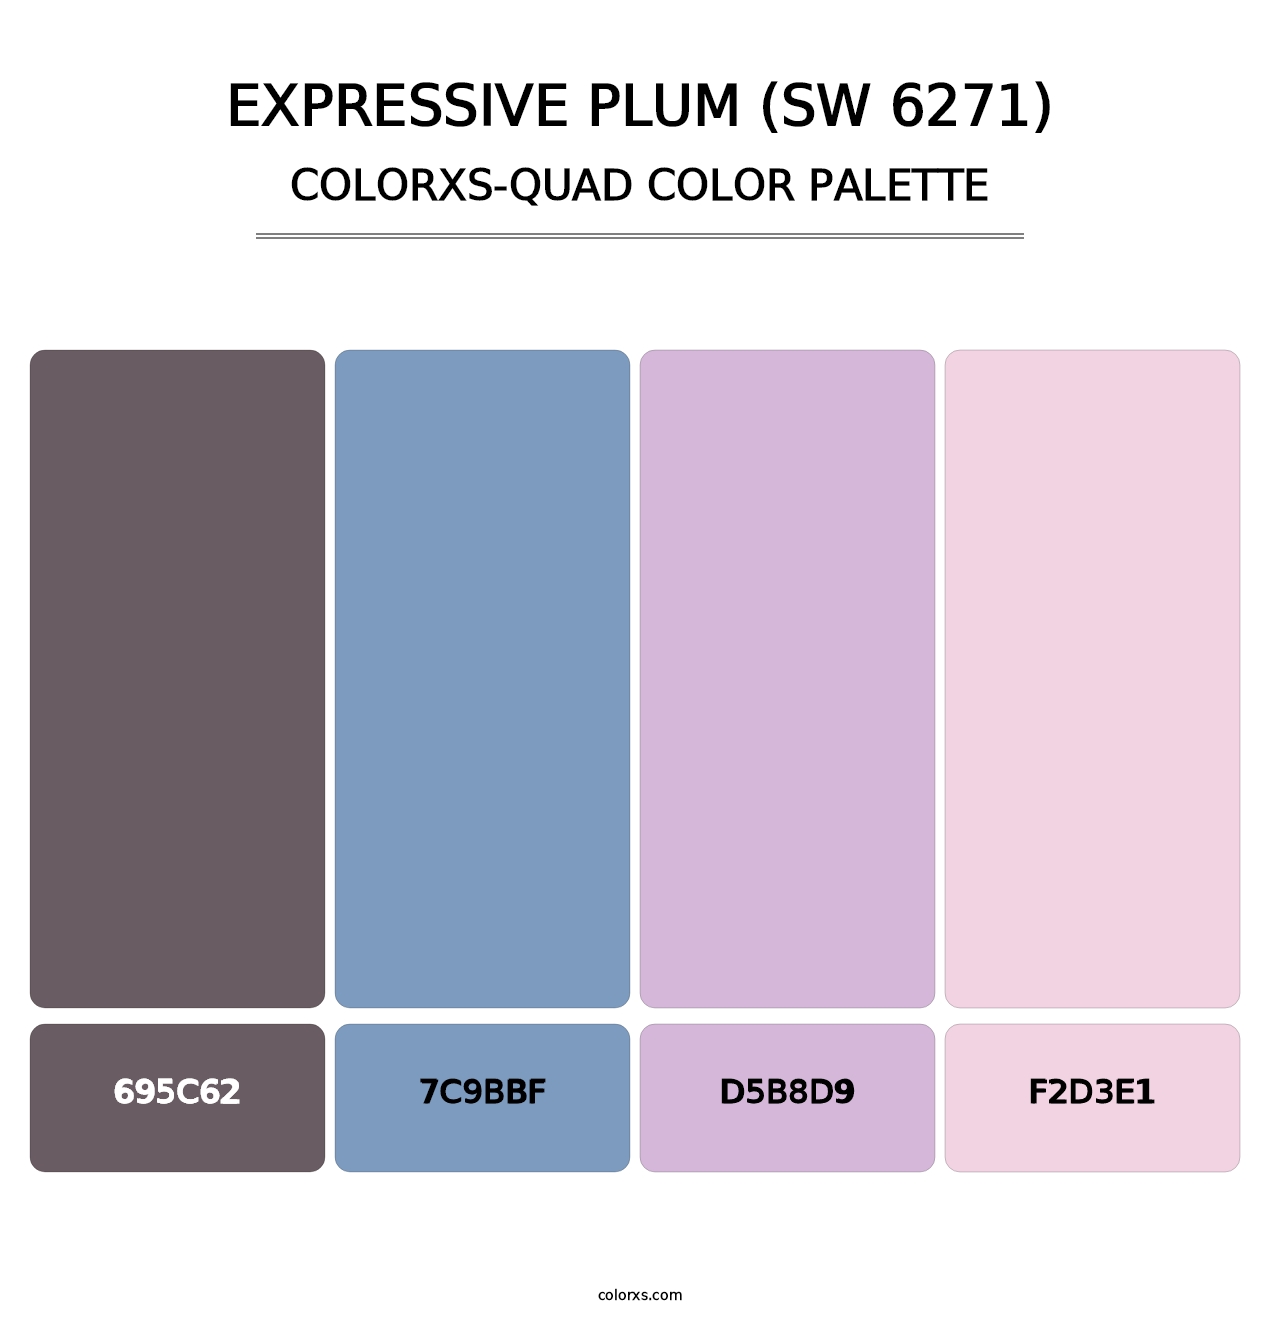 Expressive Plum (SW 6271) - Colorxs Quad Palette